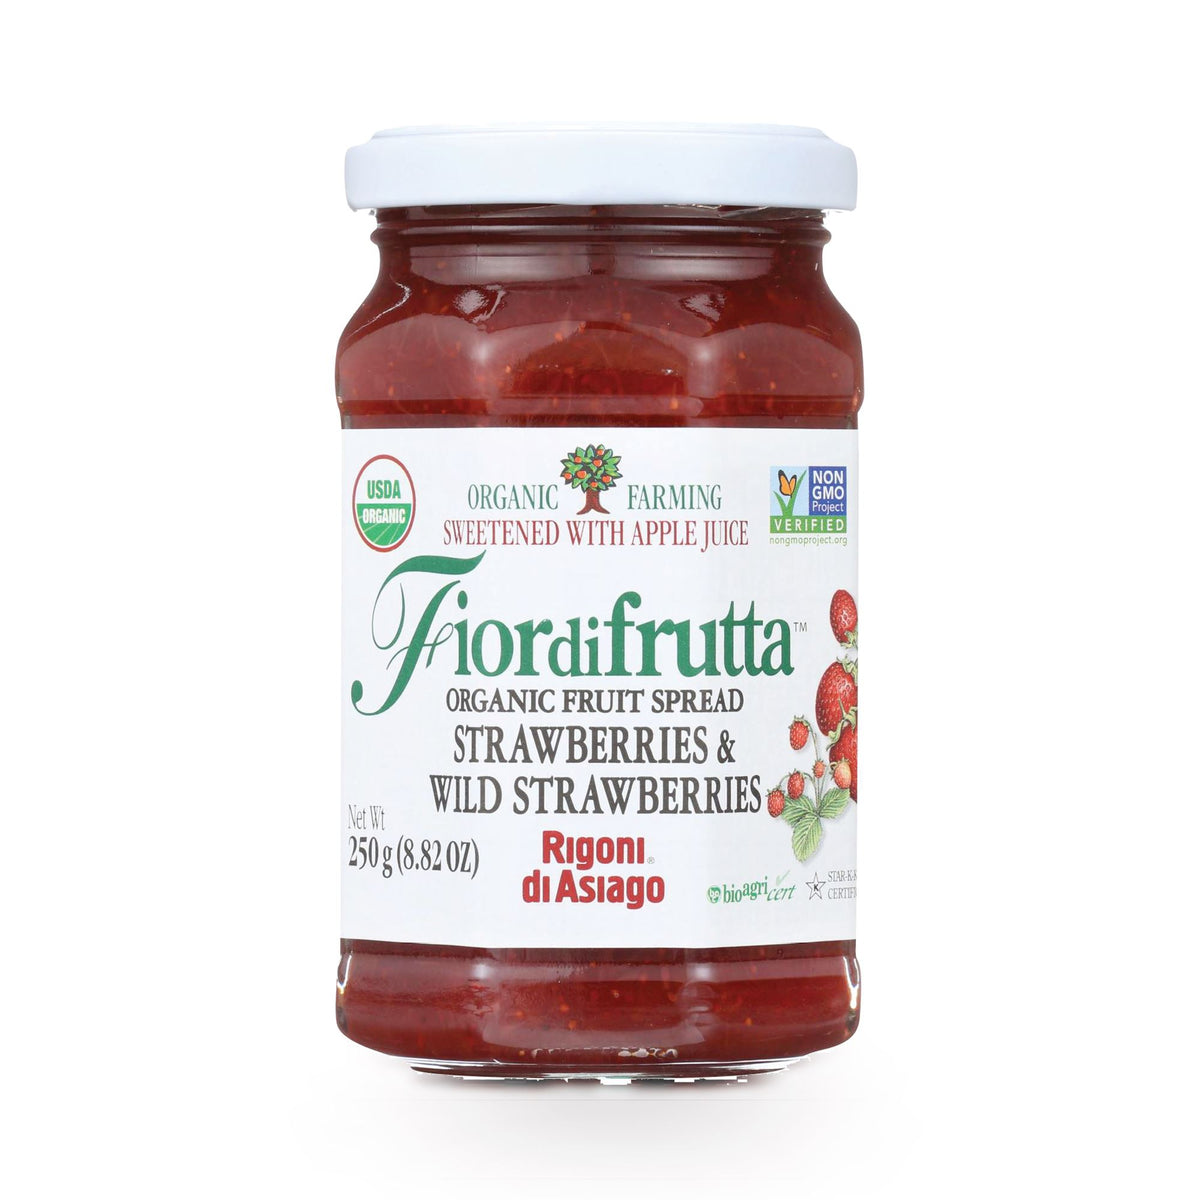 Fiordifrutta Italian Organic Strawberry spread- 8.82oz/250g — Sogno Toscano